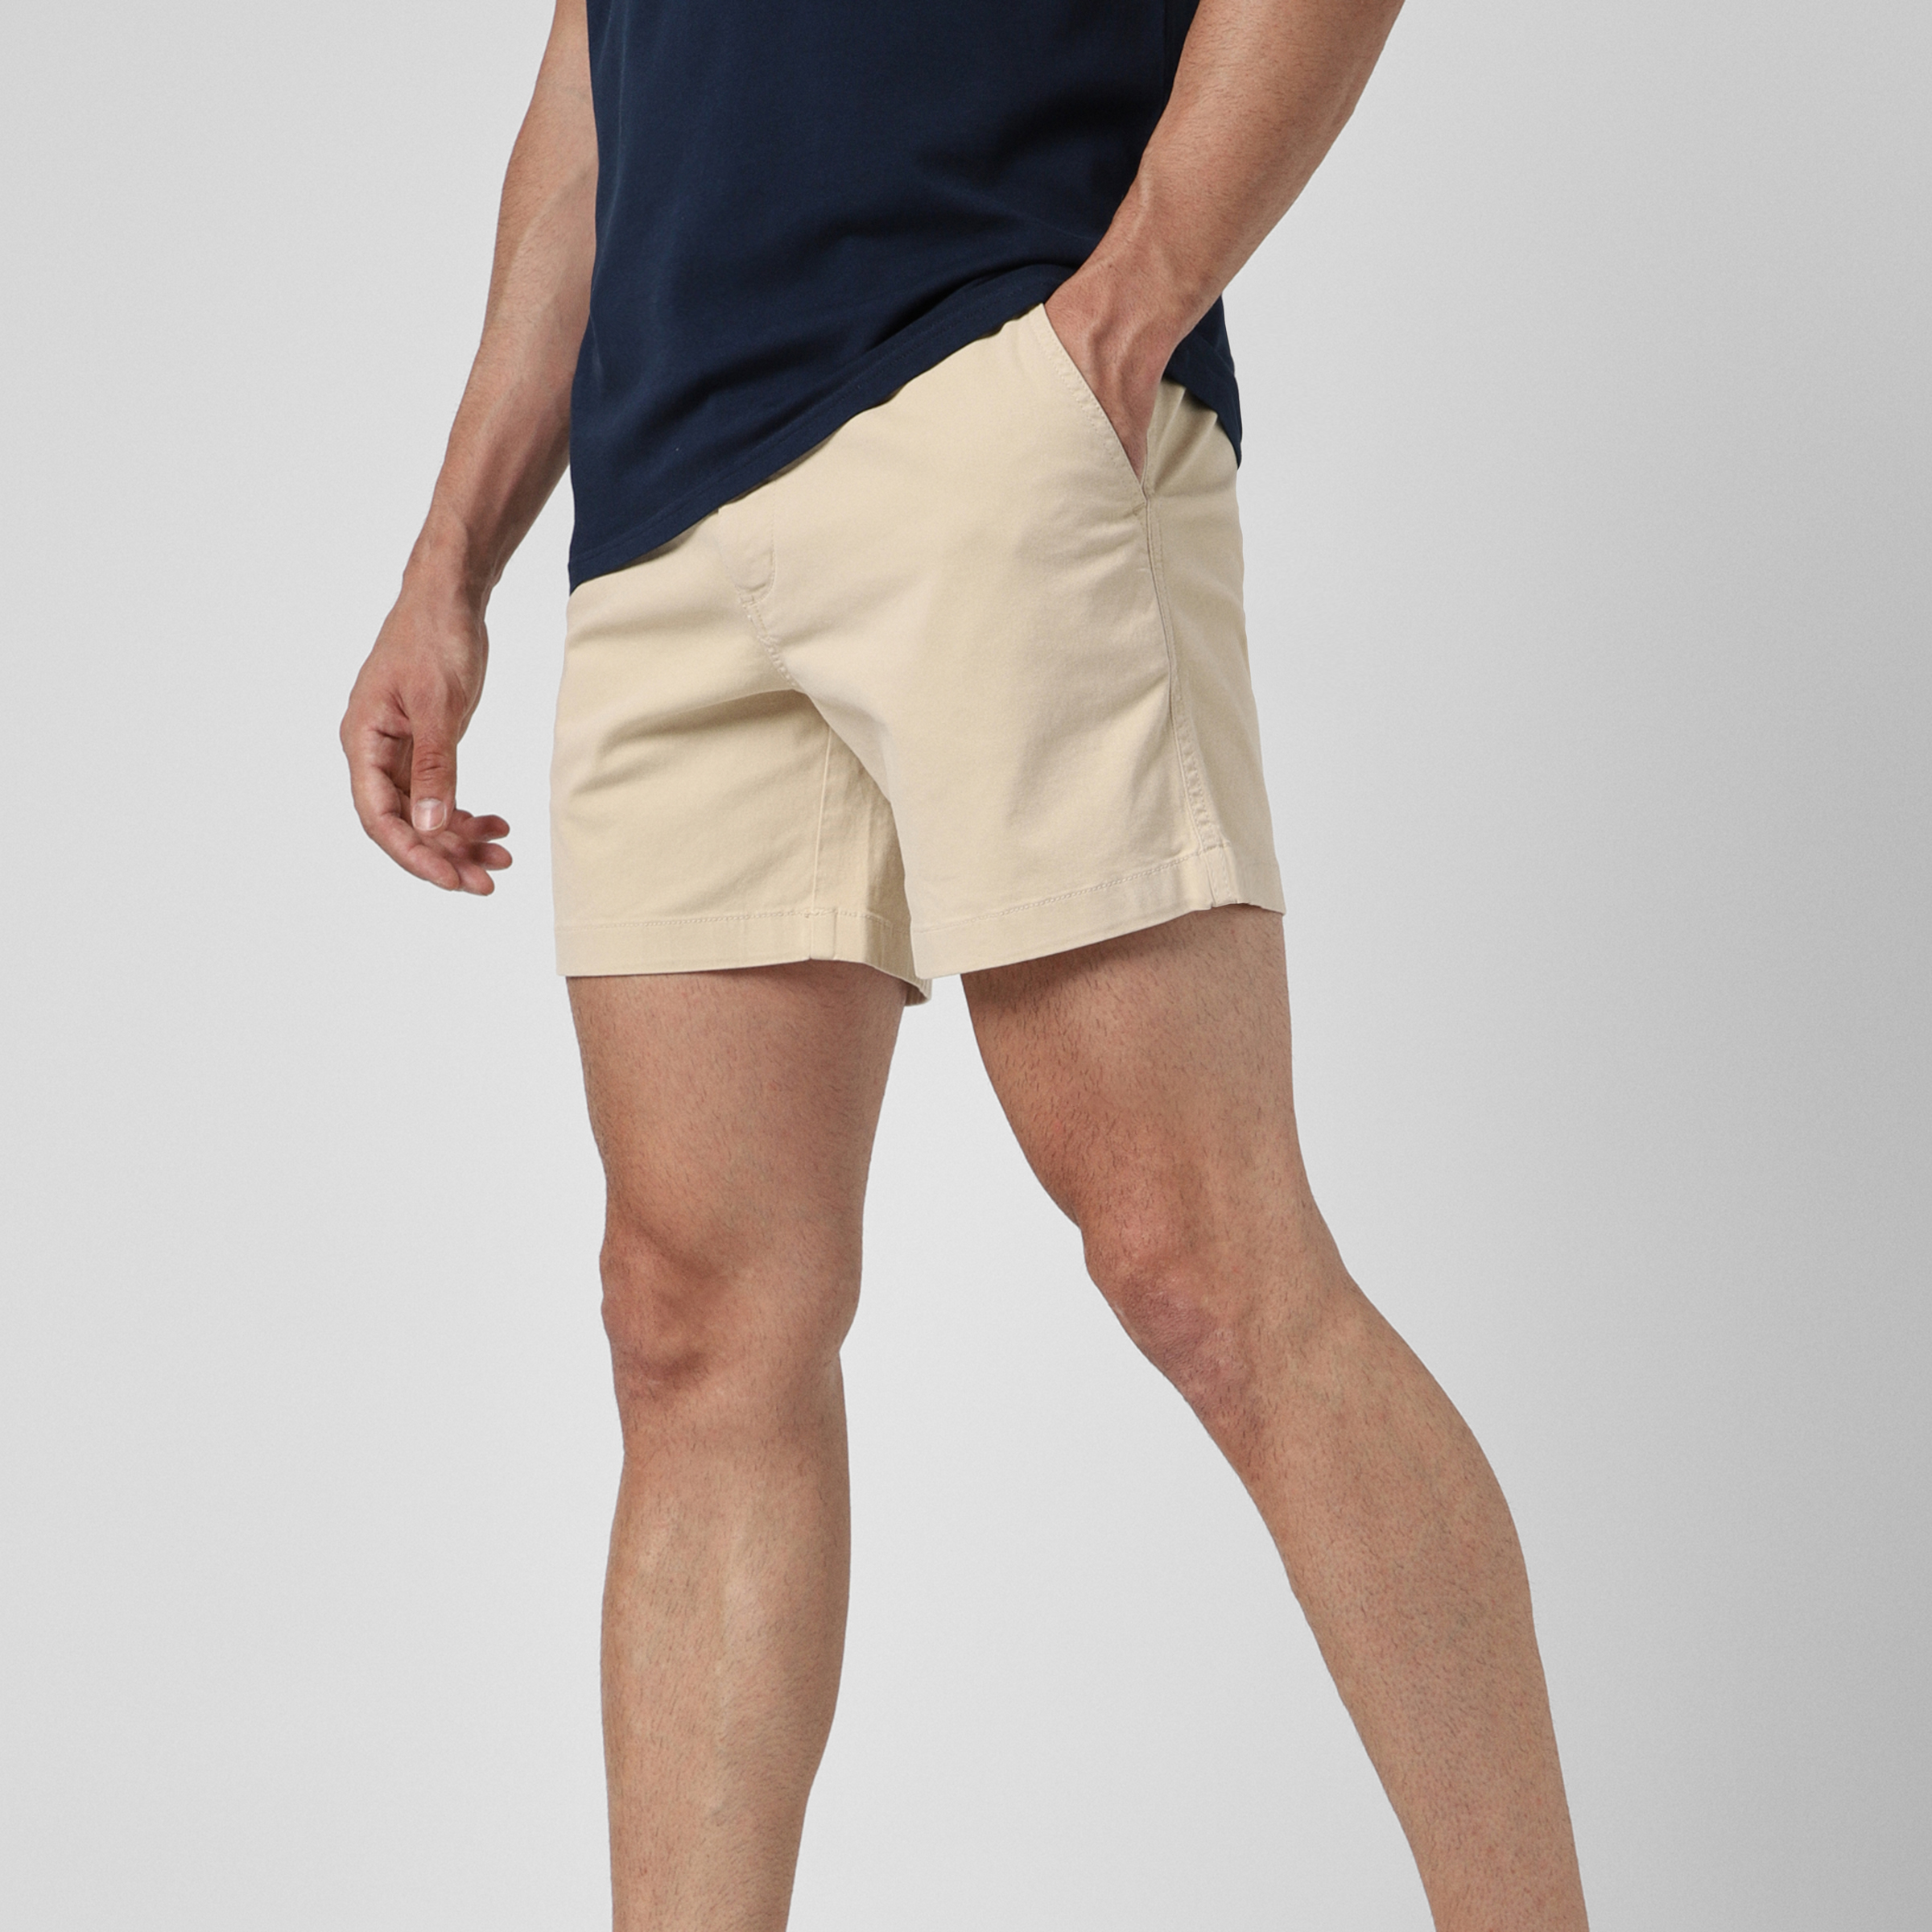 Plus Size Black Shorts Elastic Waist Cotton Half Pant for Man Stretchable